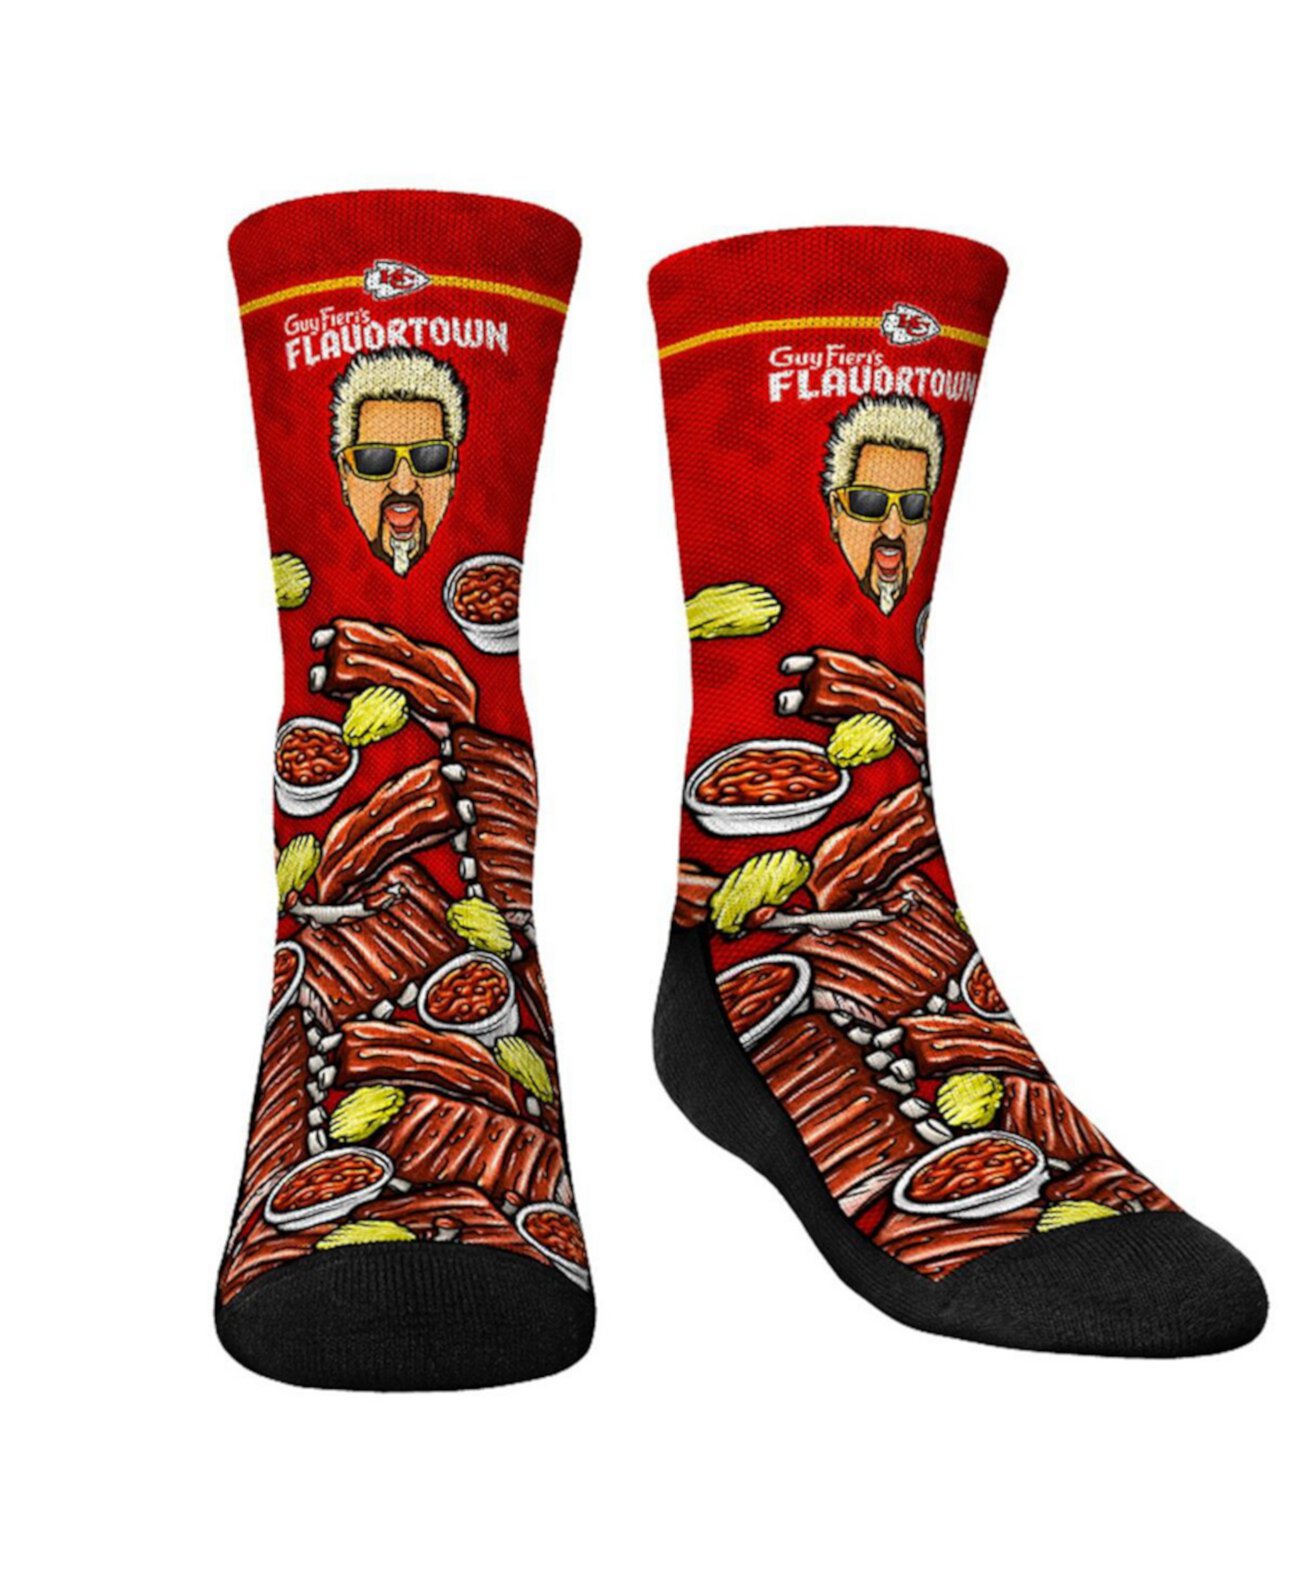 Молодежные носки для мальчиков и девочек Kansas City Chiefs NFL x Guy Fieri’s Flavortown Crew Socks Rock 'Em